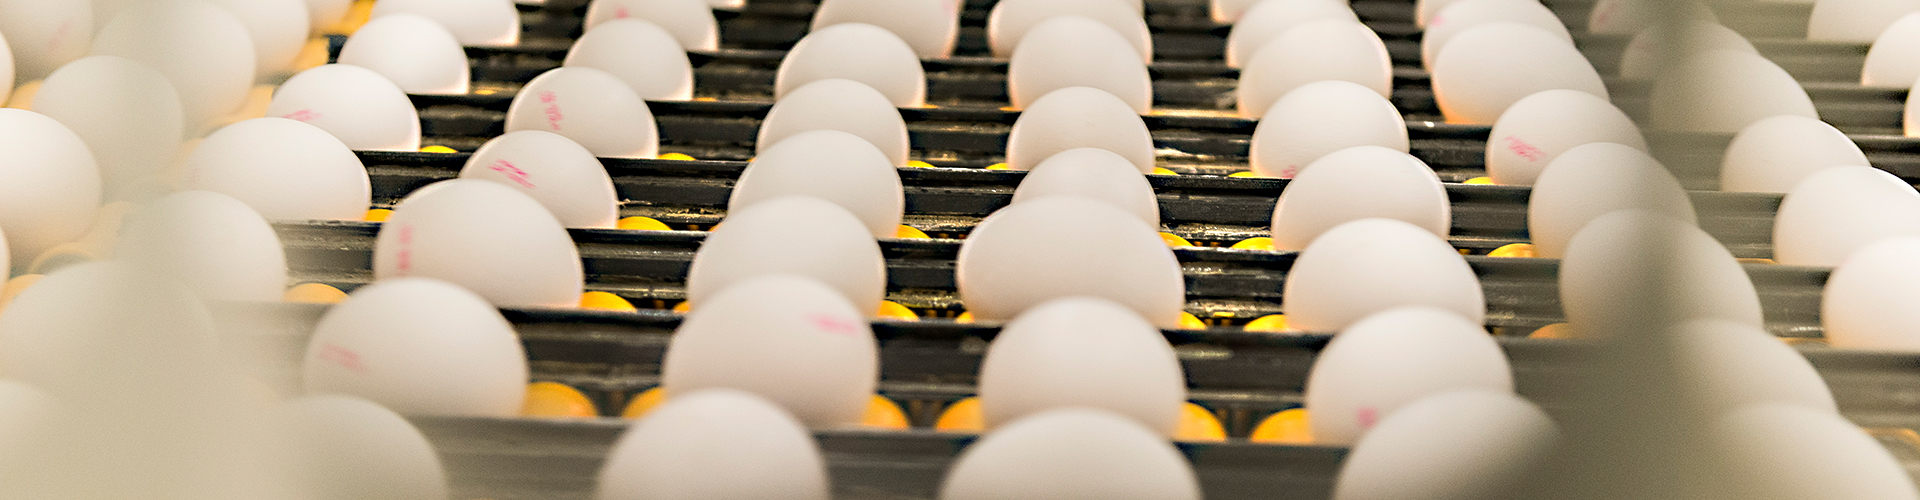 Weisse Eier auf der Transportkette einer MOBA Sortiermaschine